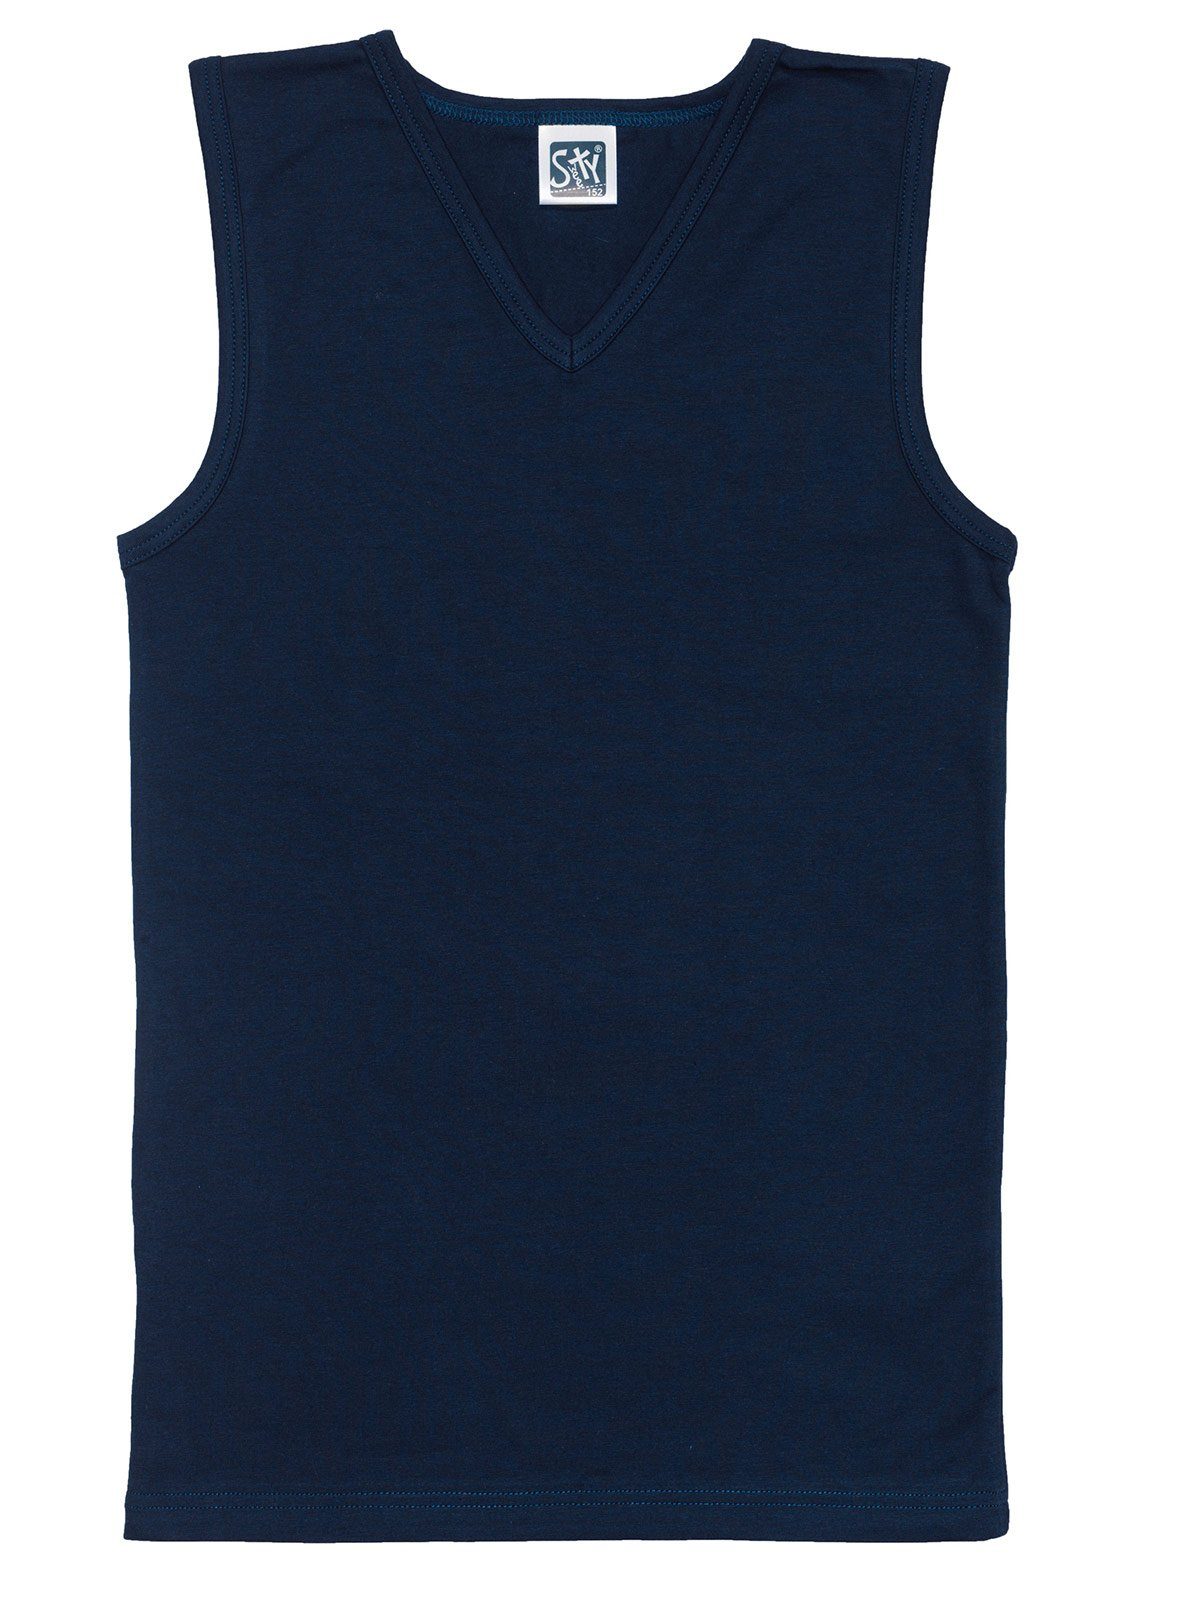 Sweety for hohe Kids Shirt 6-St) weiss Single Knaben Unterhemd Jersey Markenqualität navy City Sparpack (Spar-Set, 6er